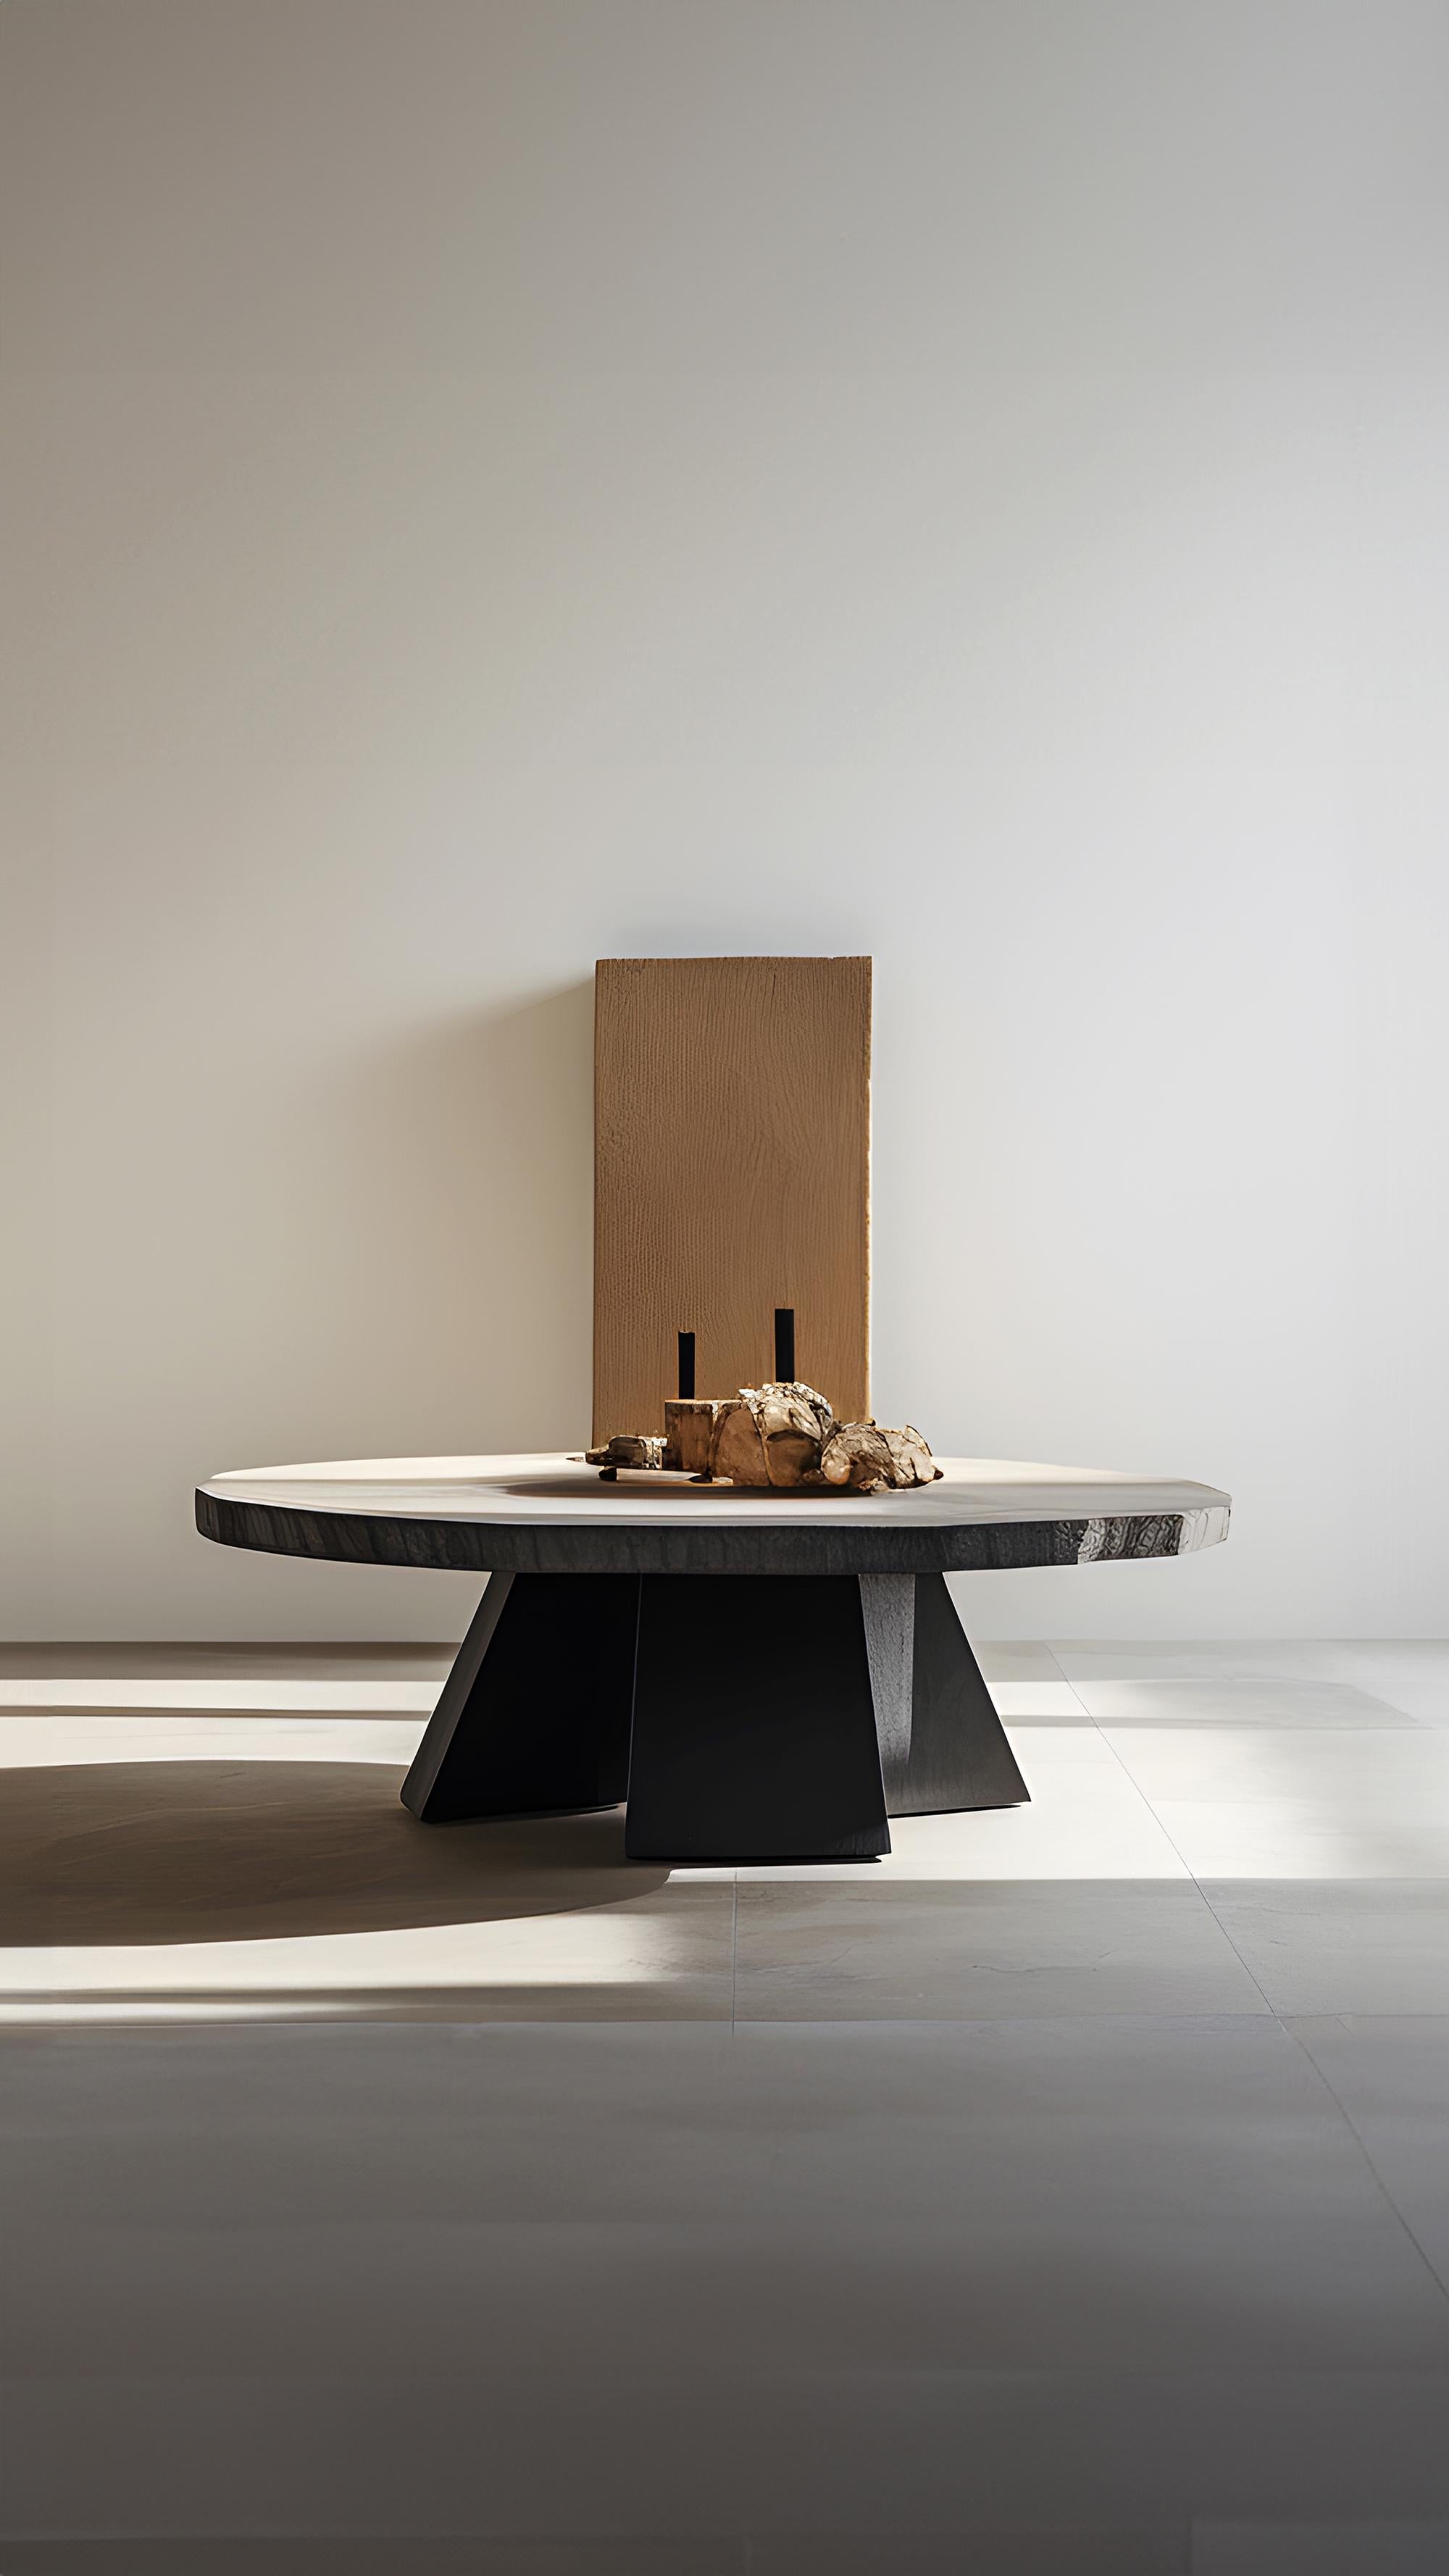 Duo-Tone Square Coffee Table - Dynamic Fundamenta 35 by NONO For Sale 3